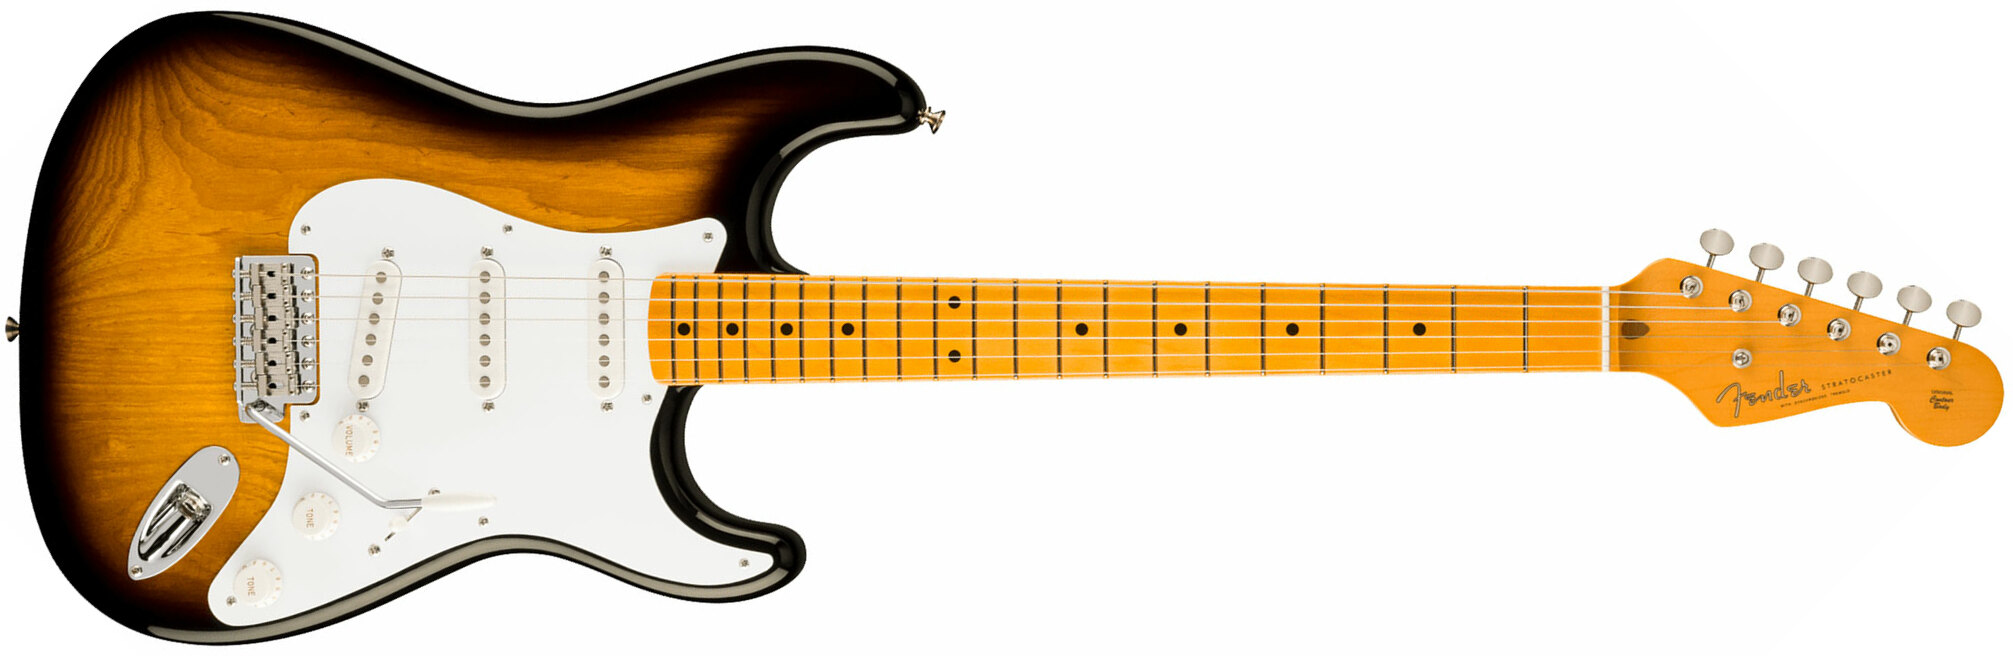 Fender Strat 1954 70th Anniversary American Vintage Ii Ltd Usa 3s Trem Mn - 2-color Sunburst - Guitare Électrique Forme Str - Main picture